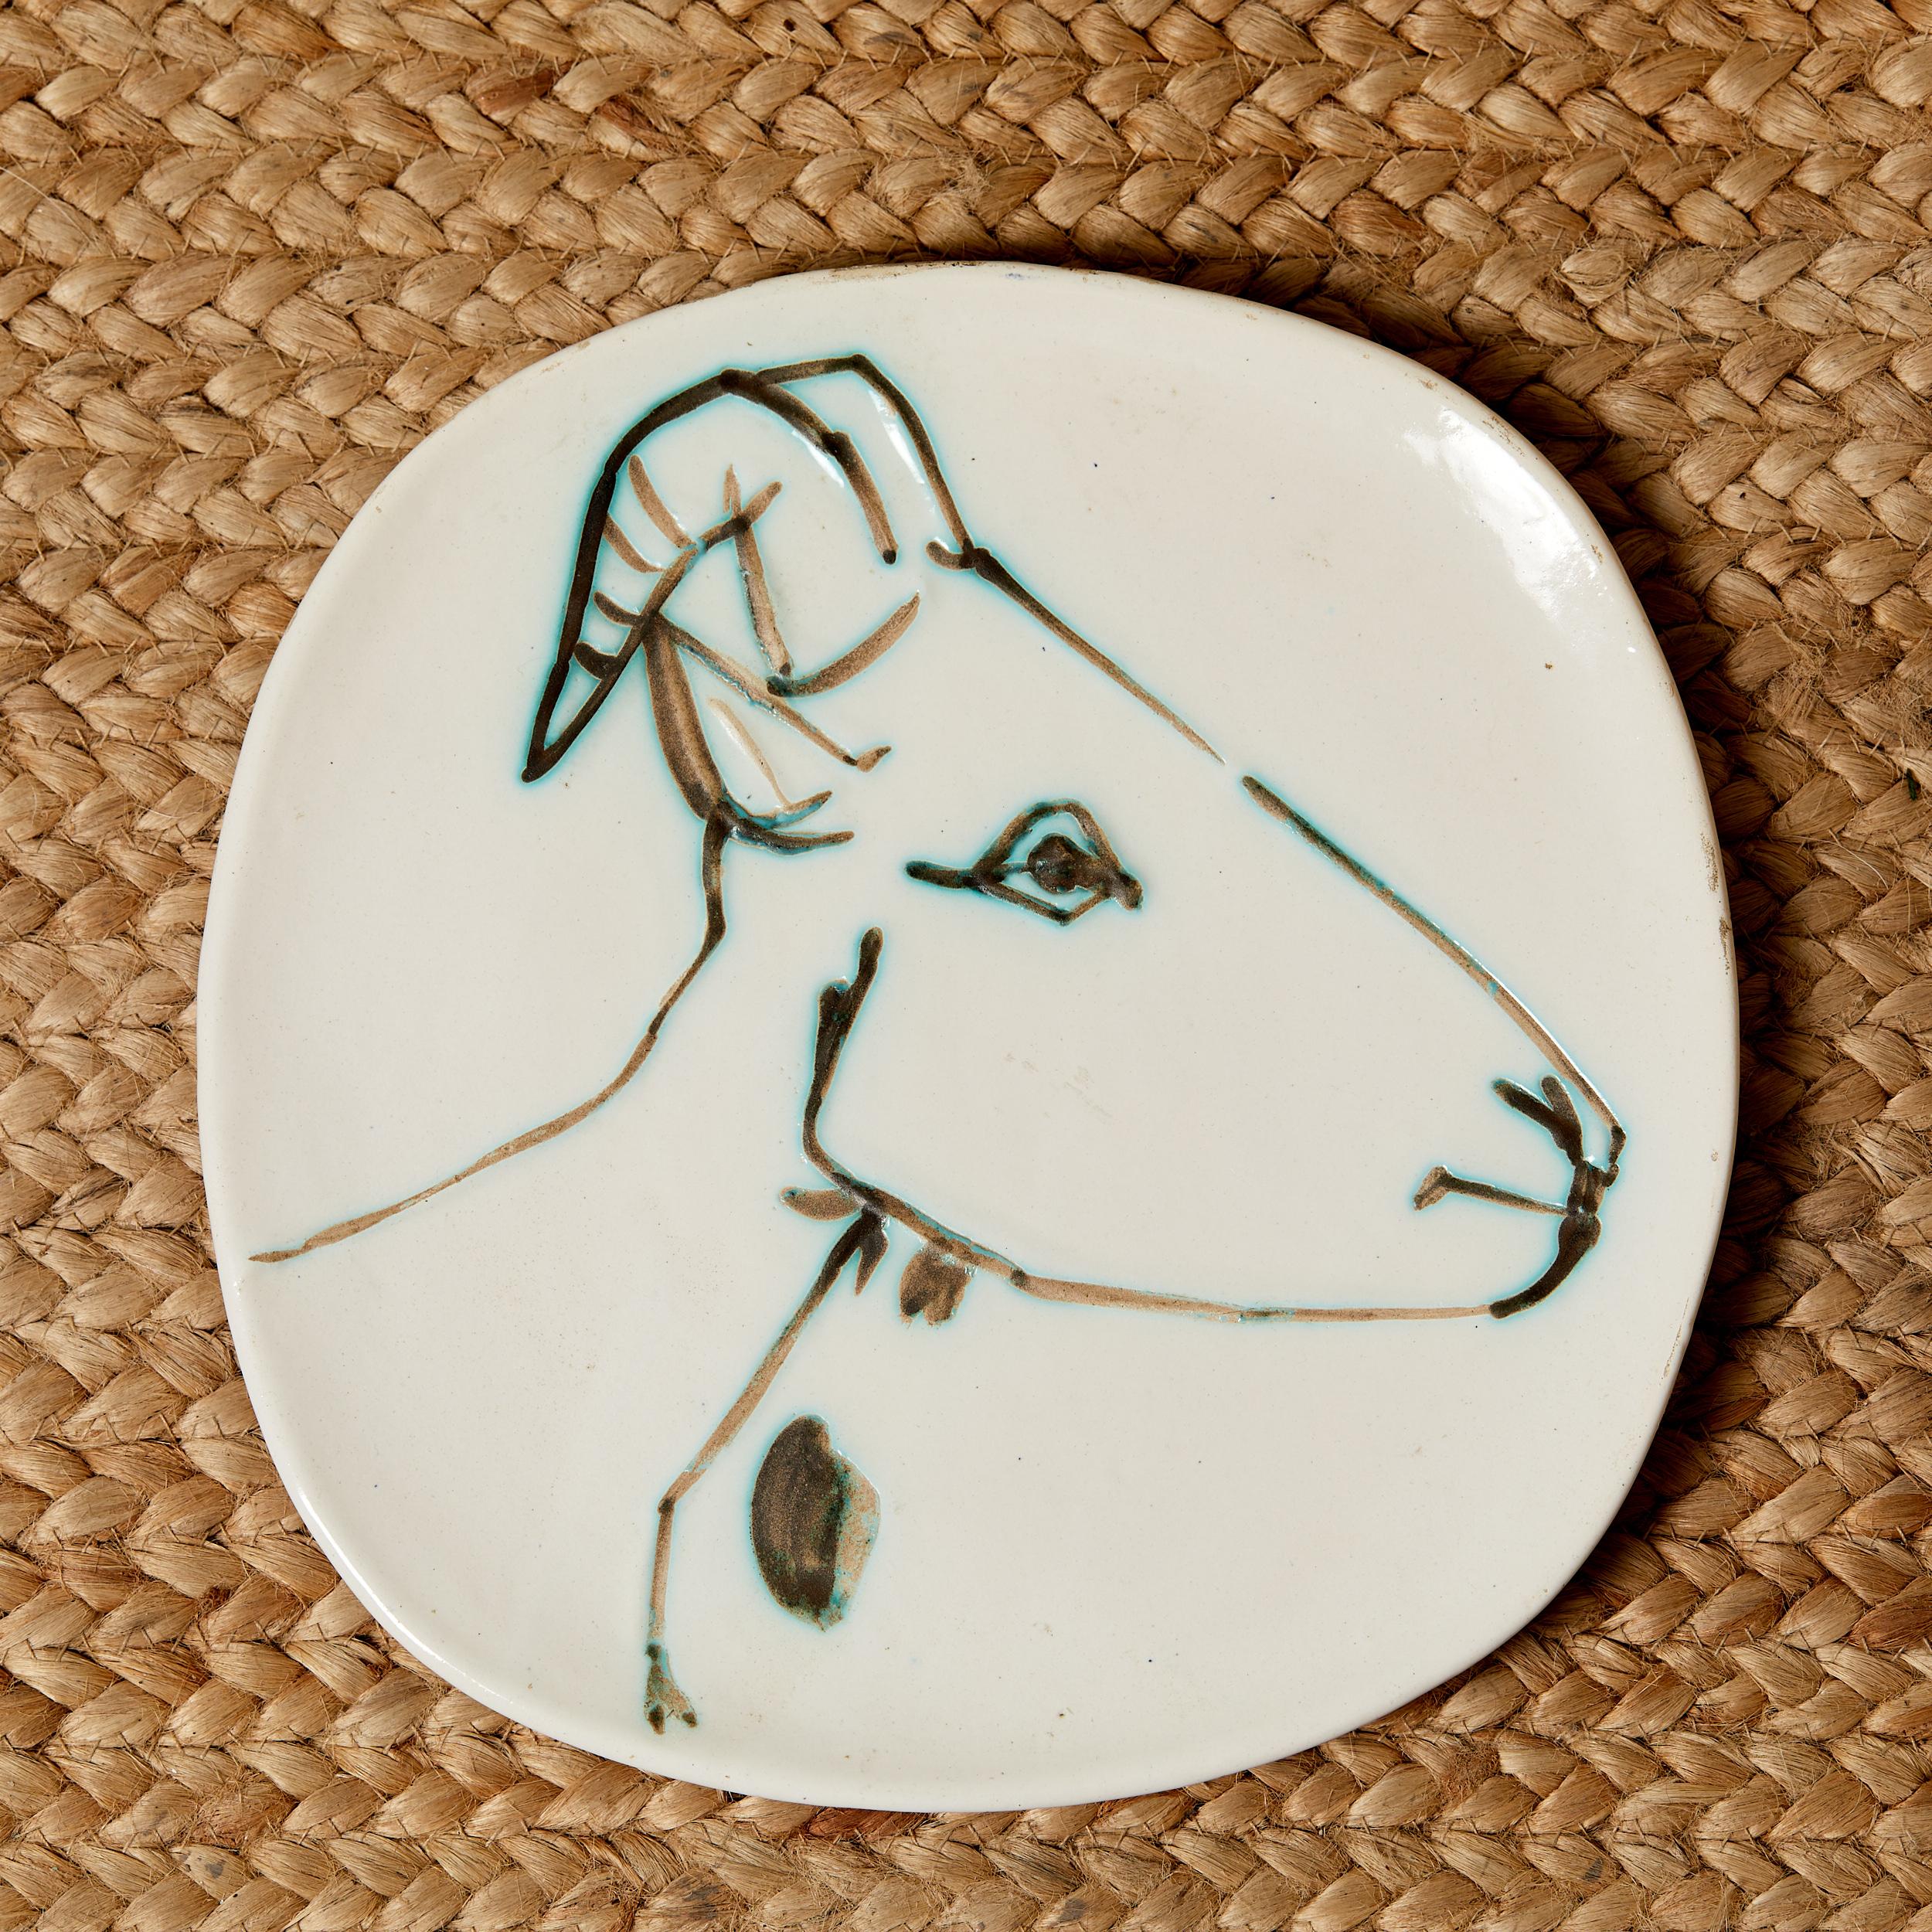 Pablo Picasso,
Tête de Chèvre de profil,
1950, 
assiette ronde carré,
D 25,5 cm
EO Terre de faience blanche, décor à la paraffine oxydée et bain d'émail blanc, Brun, vert
Tiré à 500 exemplaires
B.15Va